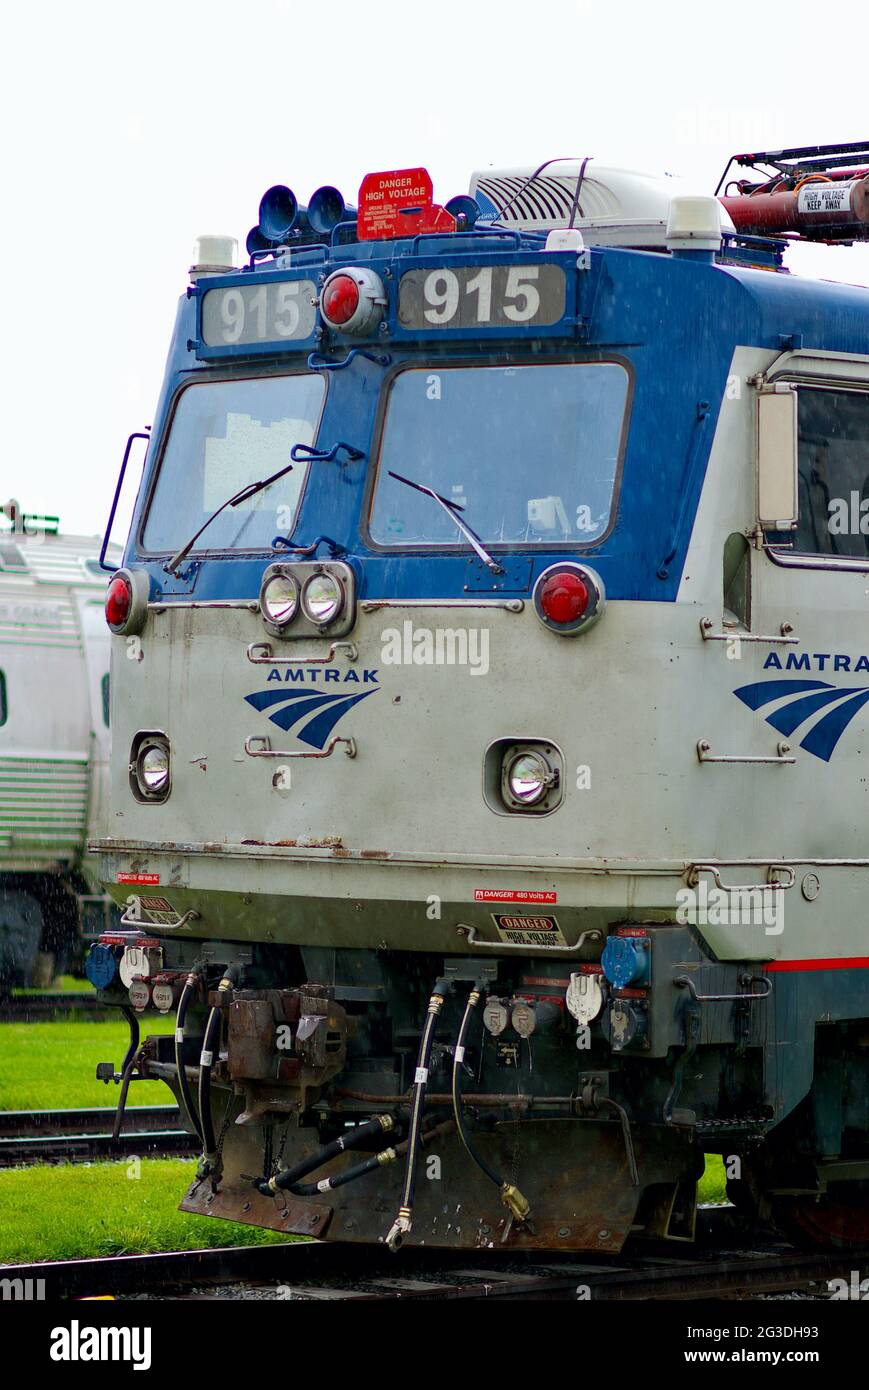 La pioggia leggera cade sulle locomotive Amtrak d'epoca esposte all'esterno al museo ferroviario della Pennsylvania nella contea di Lancaster. Foto Stock